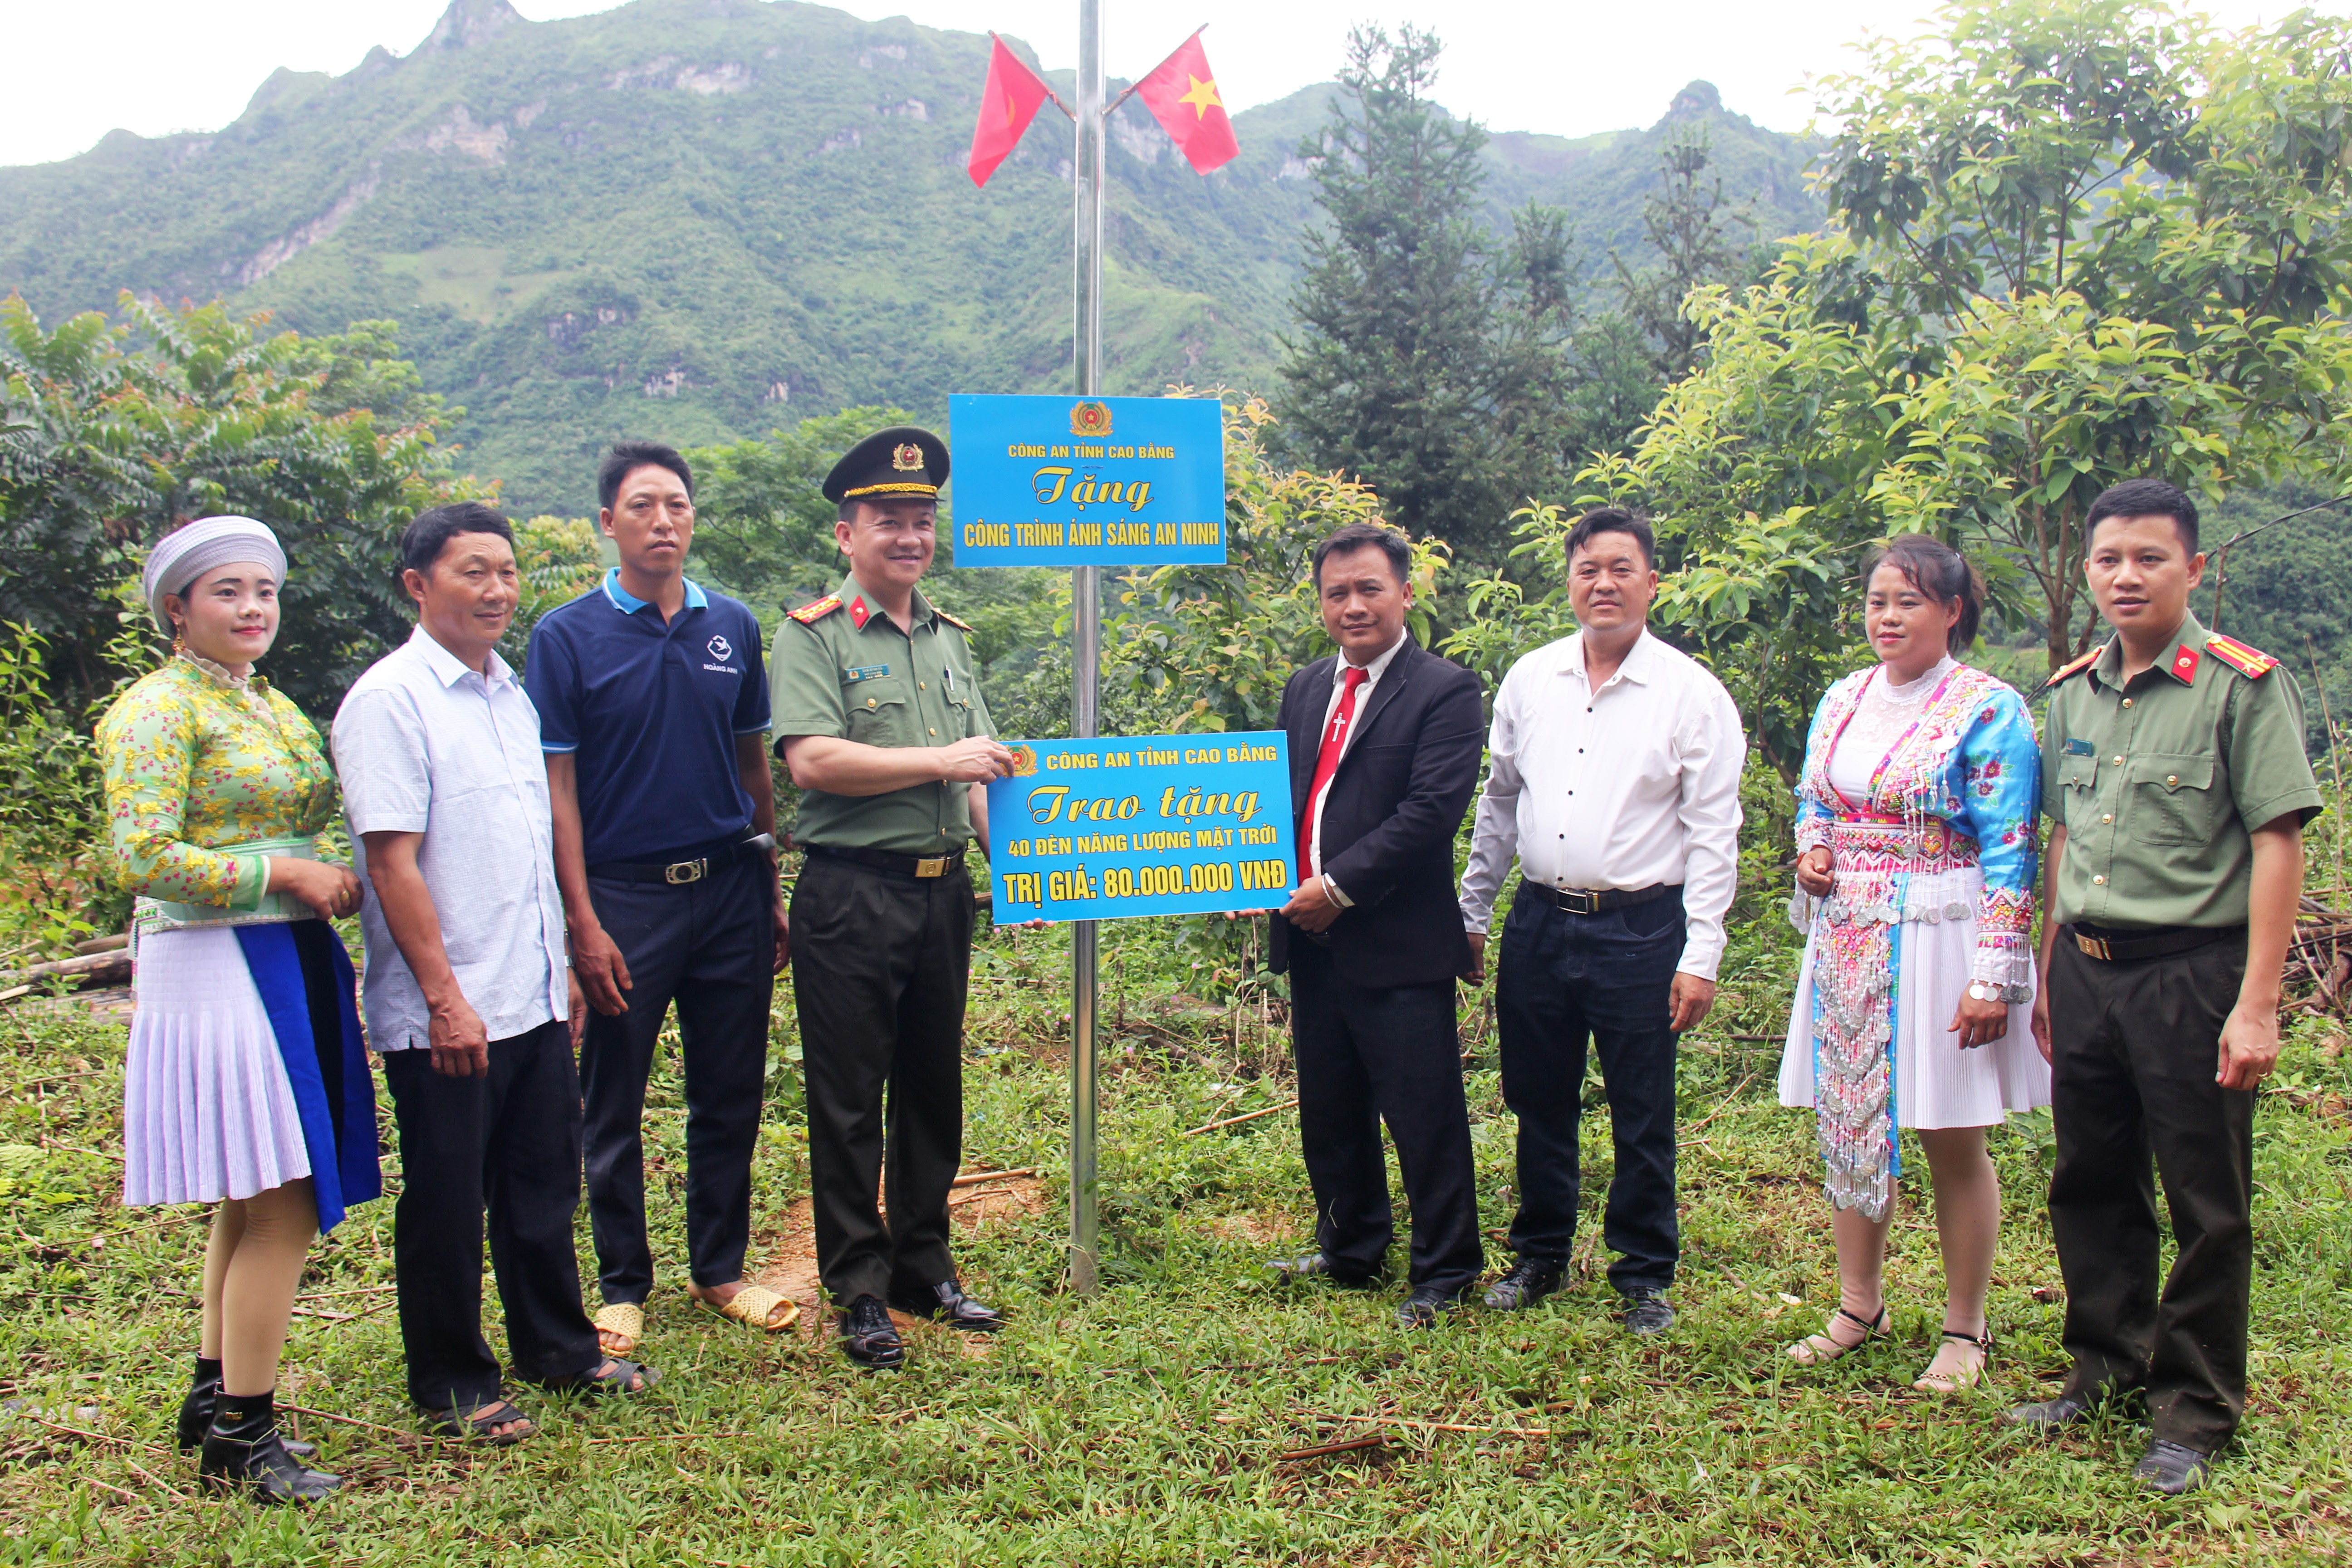 Đại diện chính quyền và cơ quan chức năng trao tặng công trình “Ánh sáng an ninh” cho người dân xóm Nà Ca, thị trấn Pác Miầu, huyện Bảo Lâm, tỉnh Cao Bằng